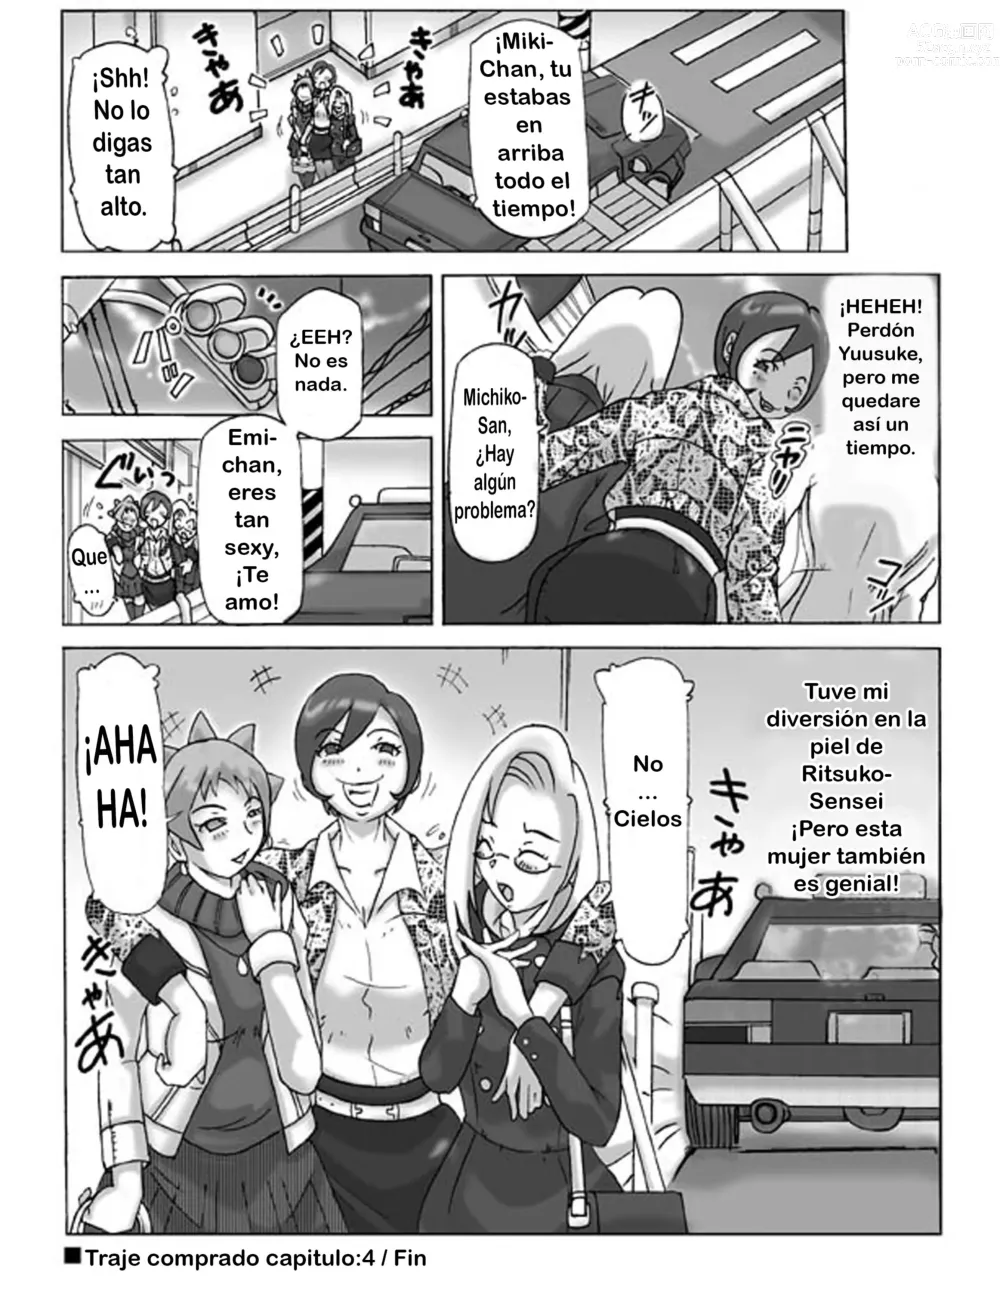 Page 46 of doujinshi Katta Kigurumi Sono Yon